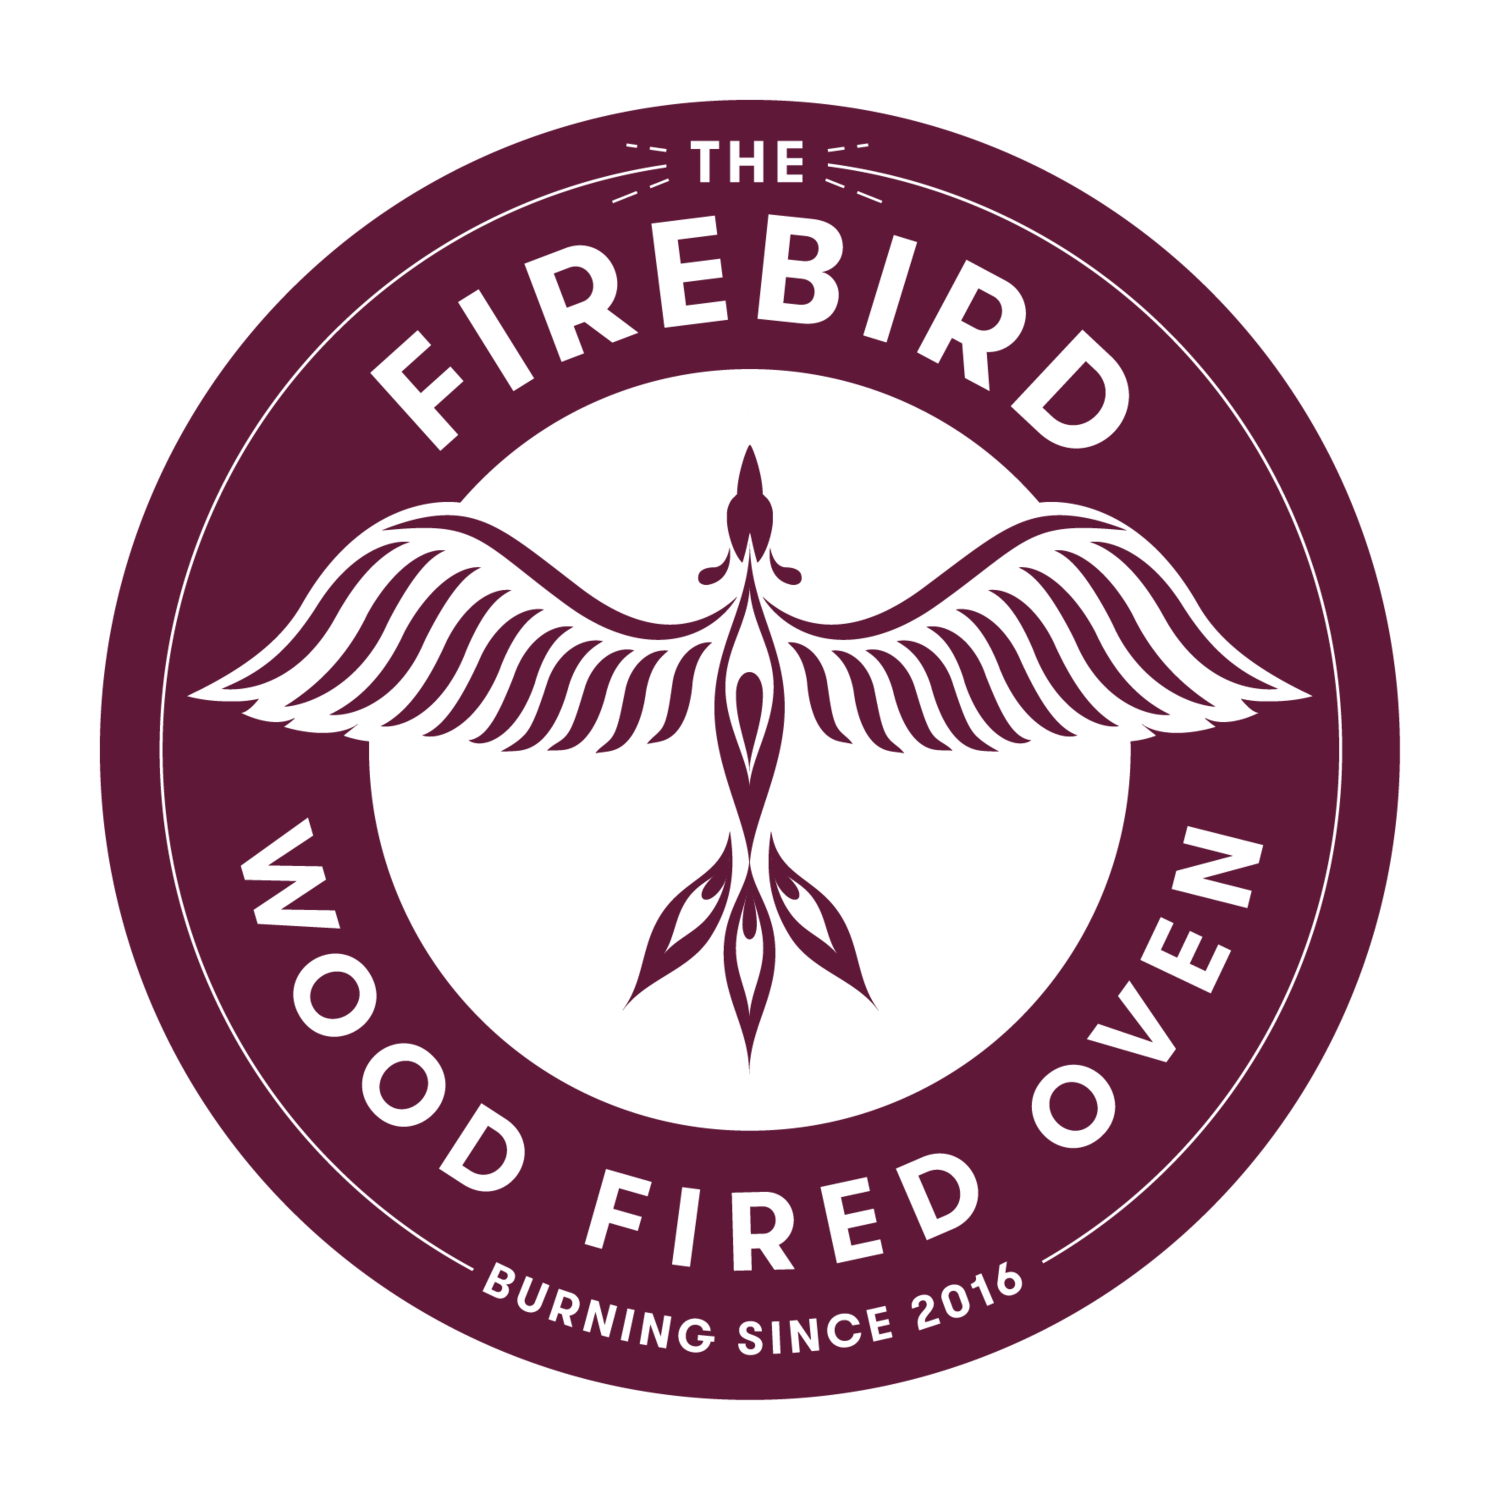 The Firebird Oven